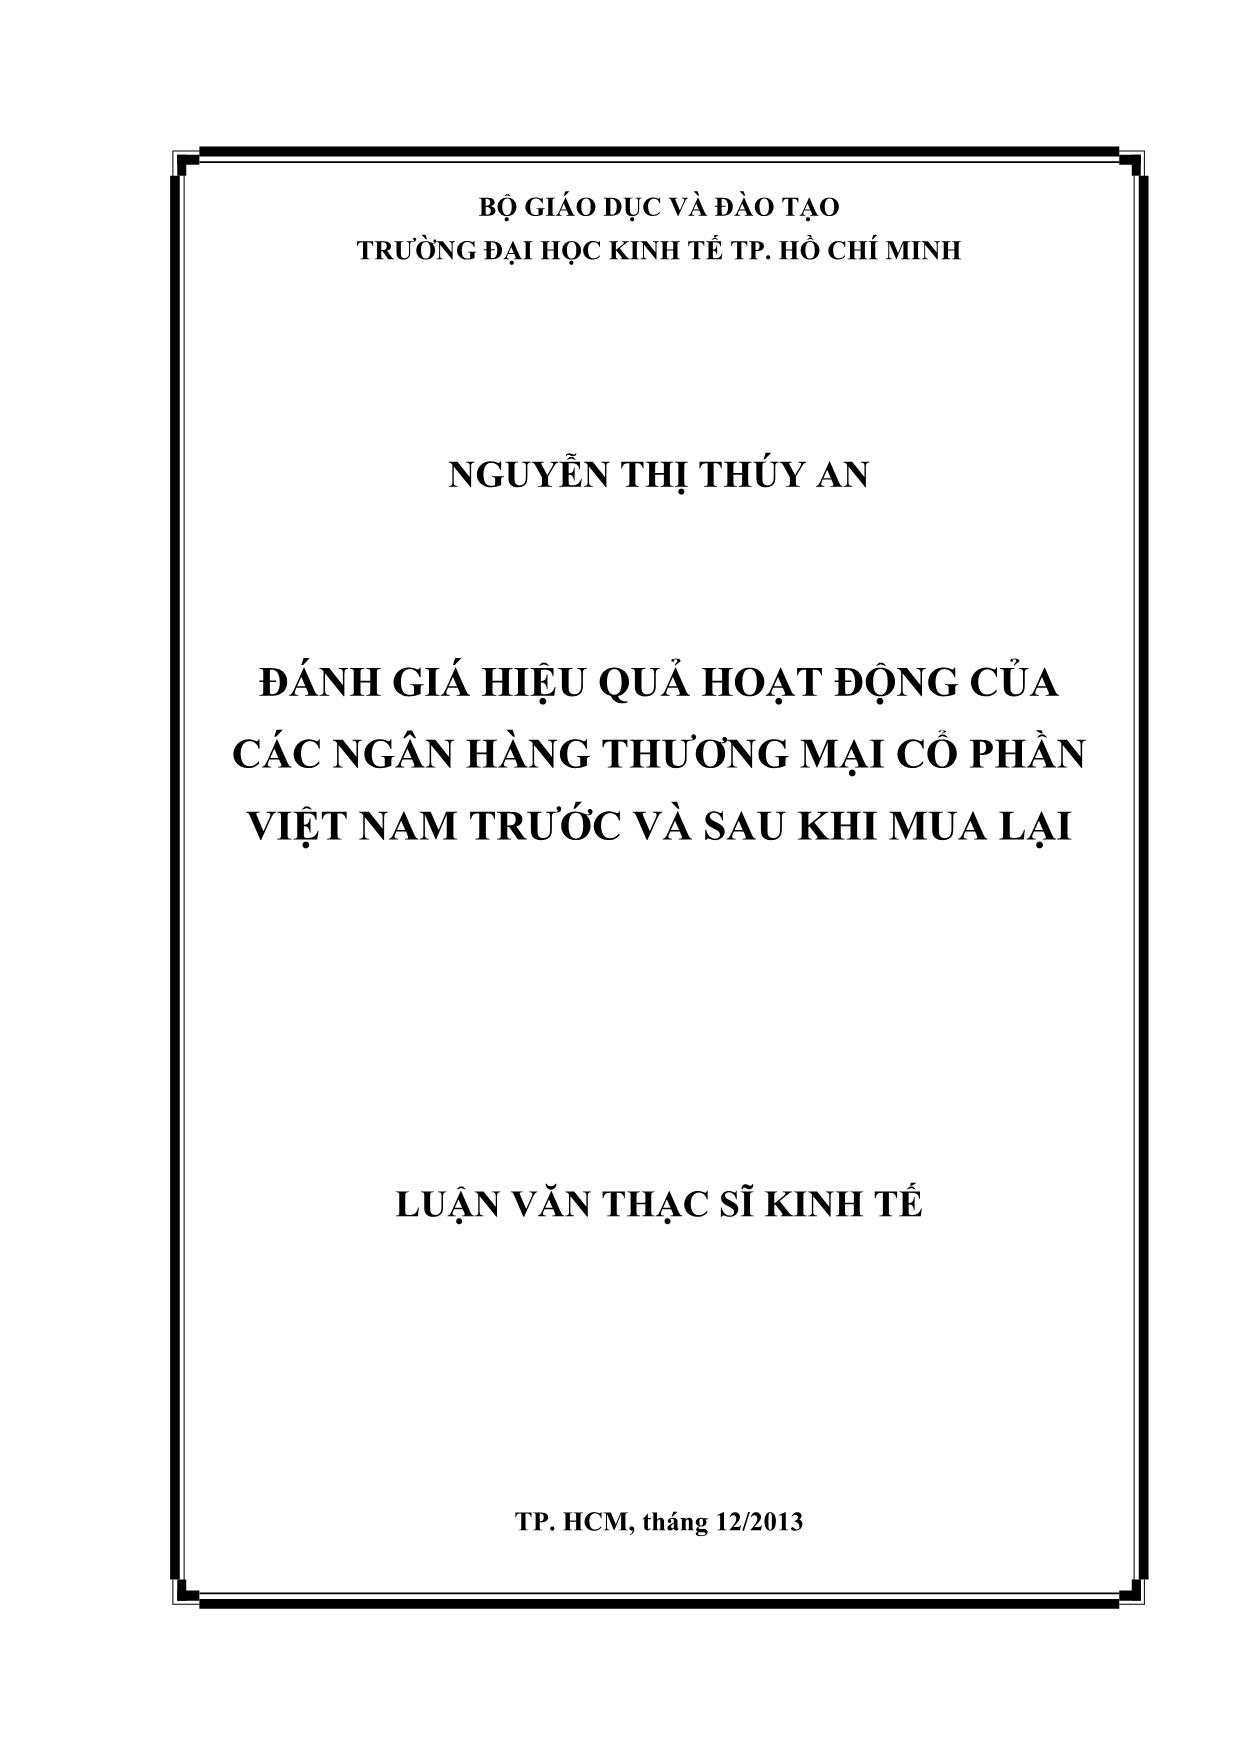 Đánh giá hiệu quả hoạt động của các ngân hàng thương mại cổ phần Việt Nam trước và sau khi mua lại trang 1